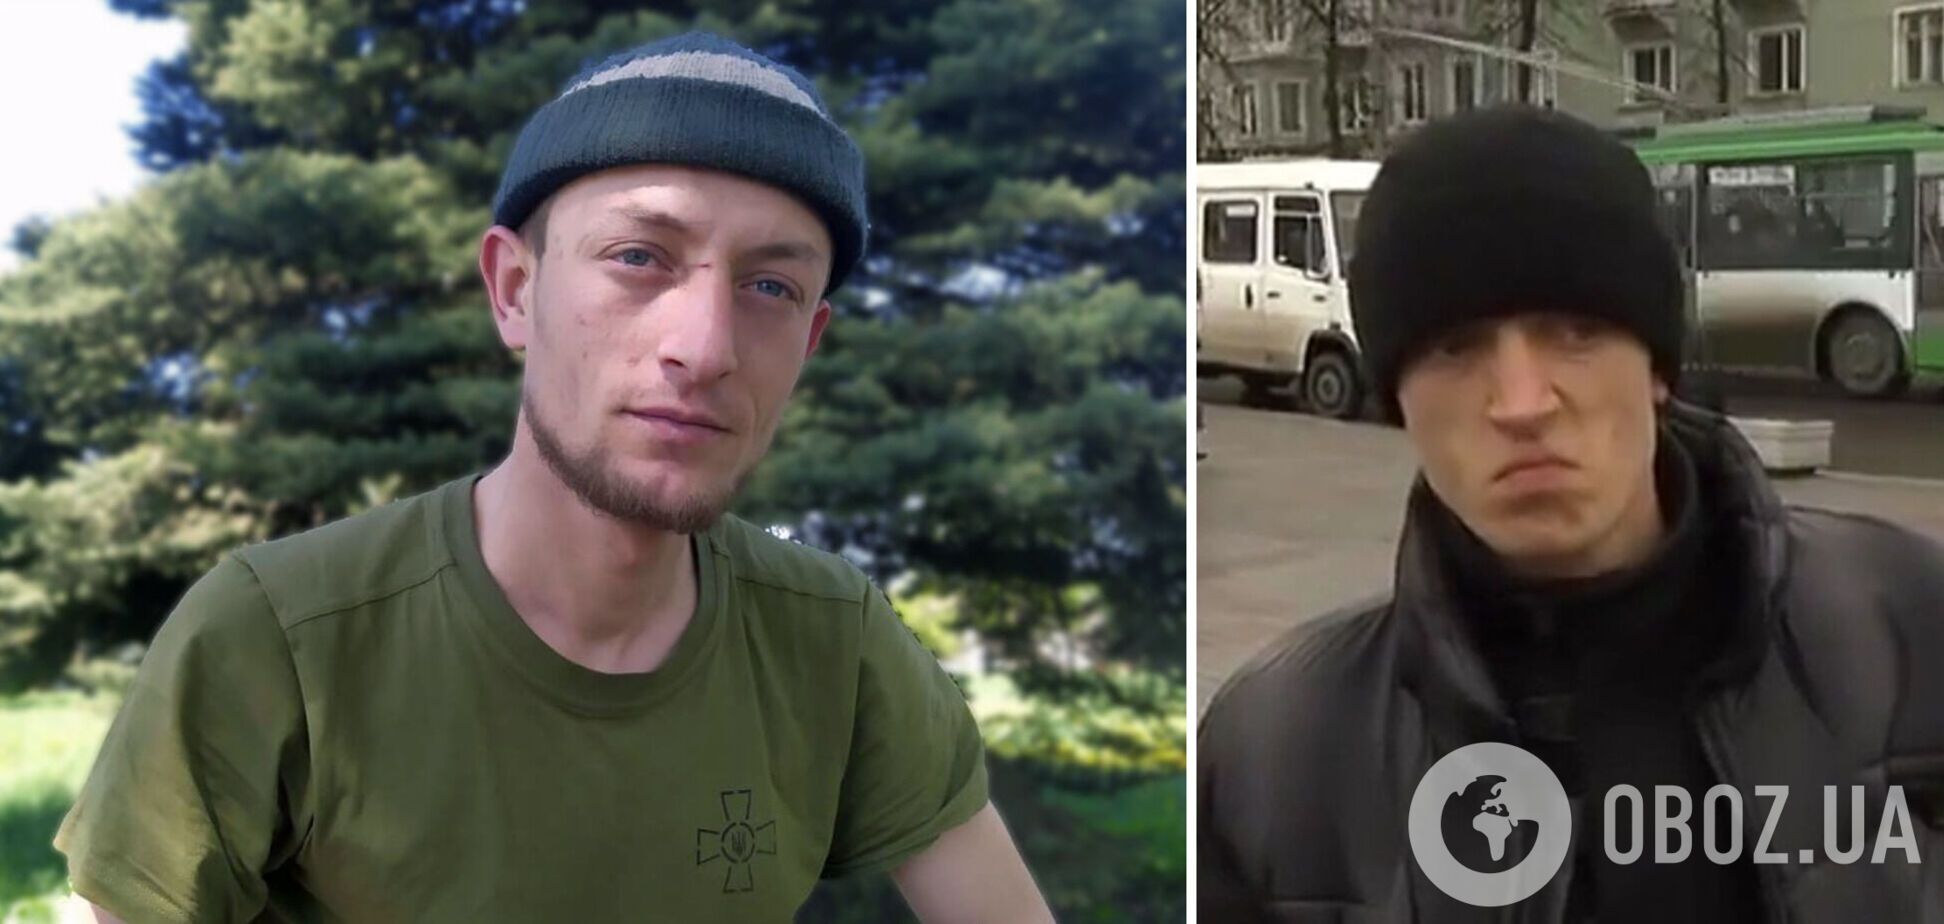 Герой мемов 'Чоткий паца' воюет против оккупантов на Донбассе: в сети рассказали его историю. Фото